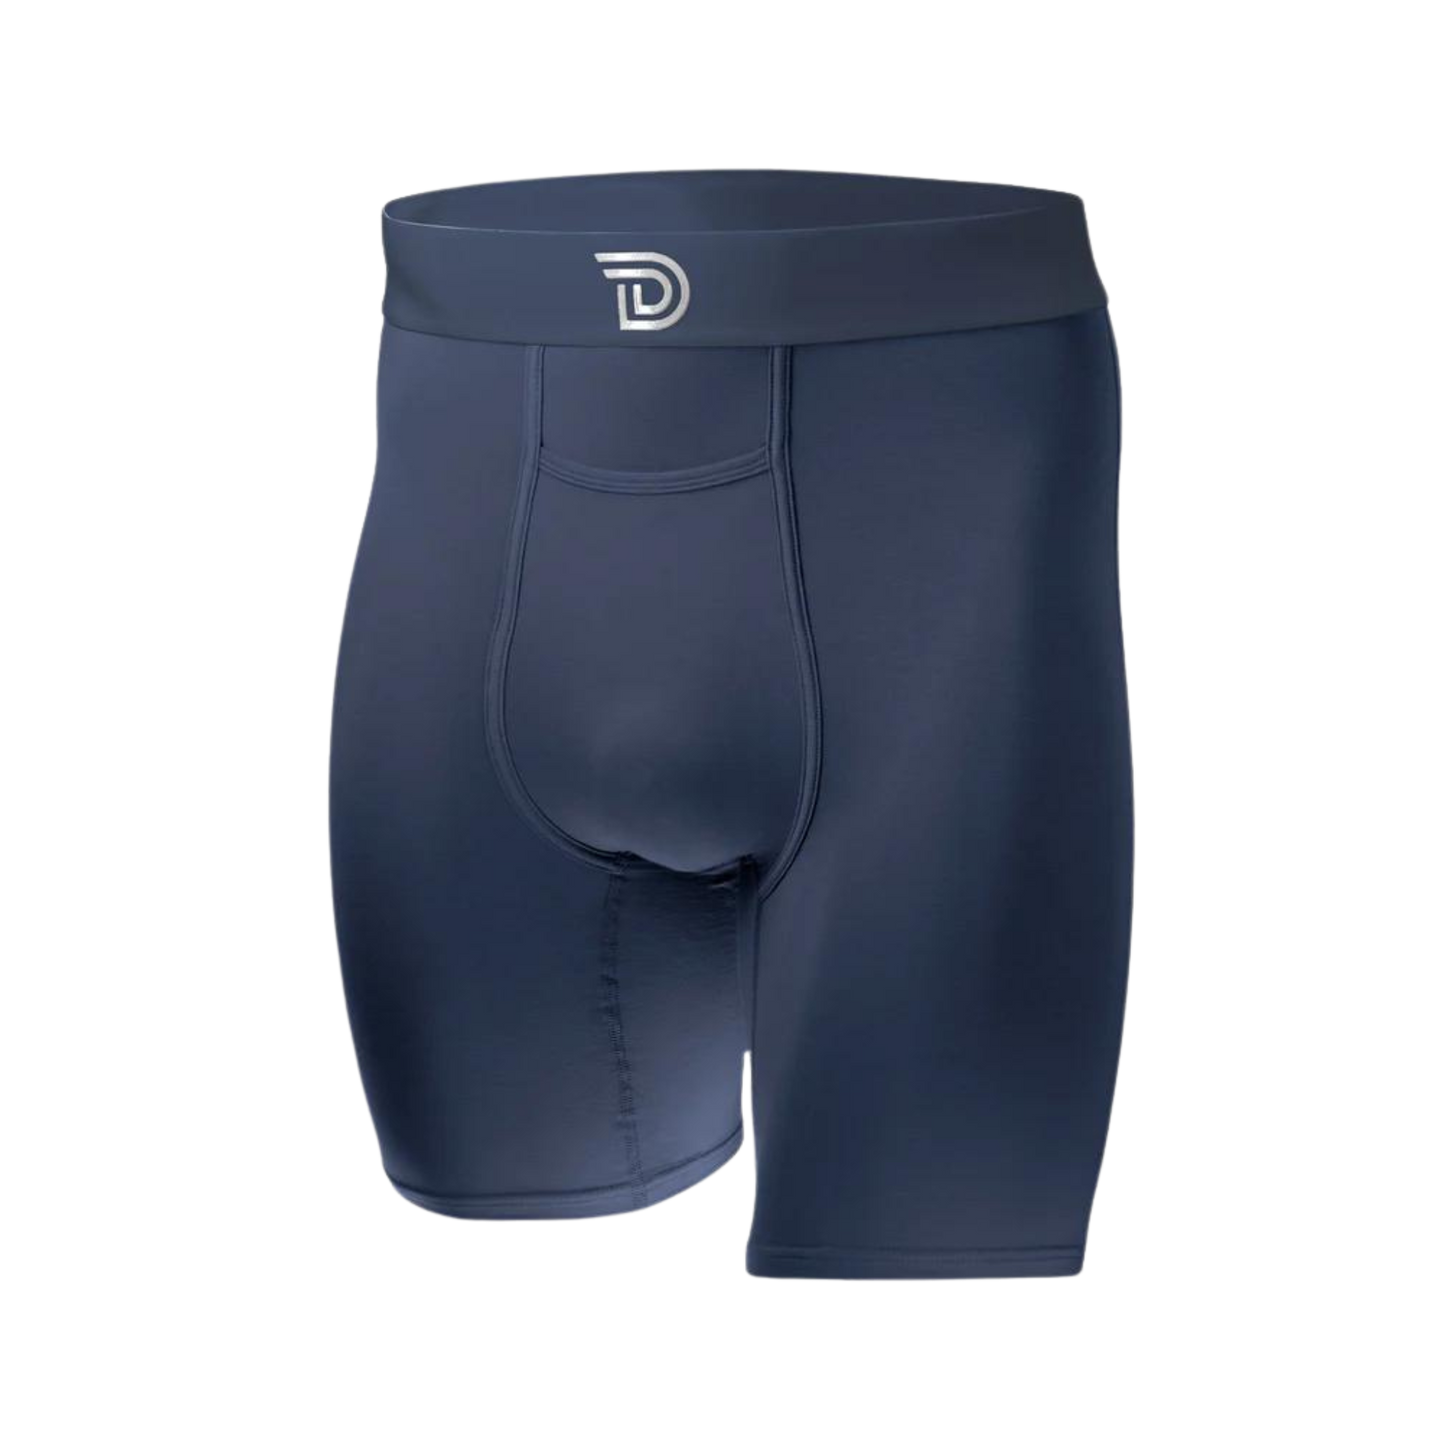 Drawlz Brand Co. , LLC Boxer Brief UCONN Pack Blessed Men's Boxer Brief Underwear 